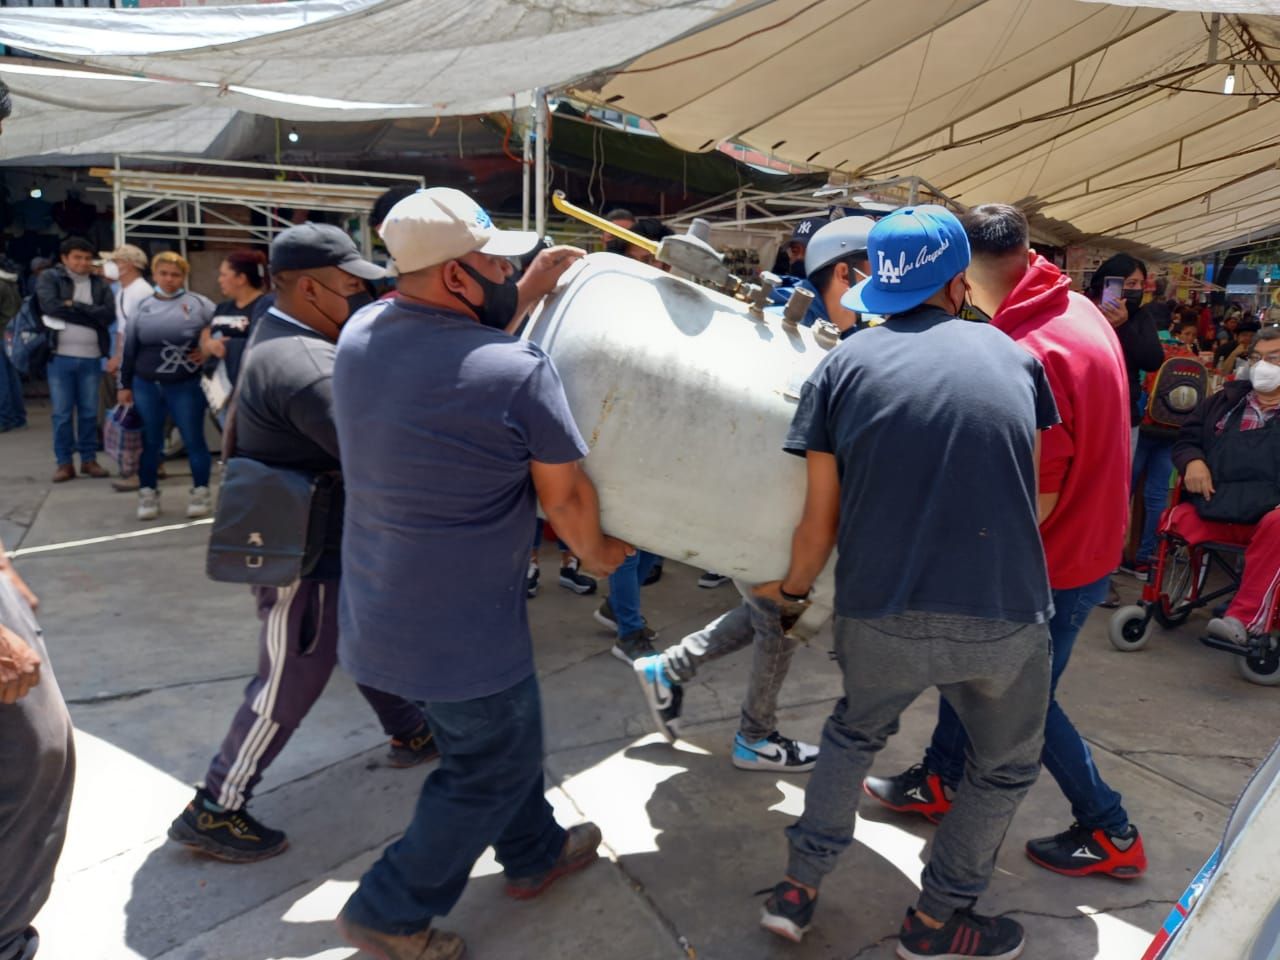 Conflicto en Mercado de Chimalhuacán, no se resuelve por intereses políticos